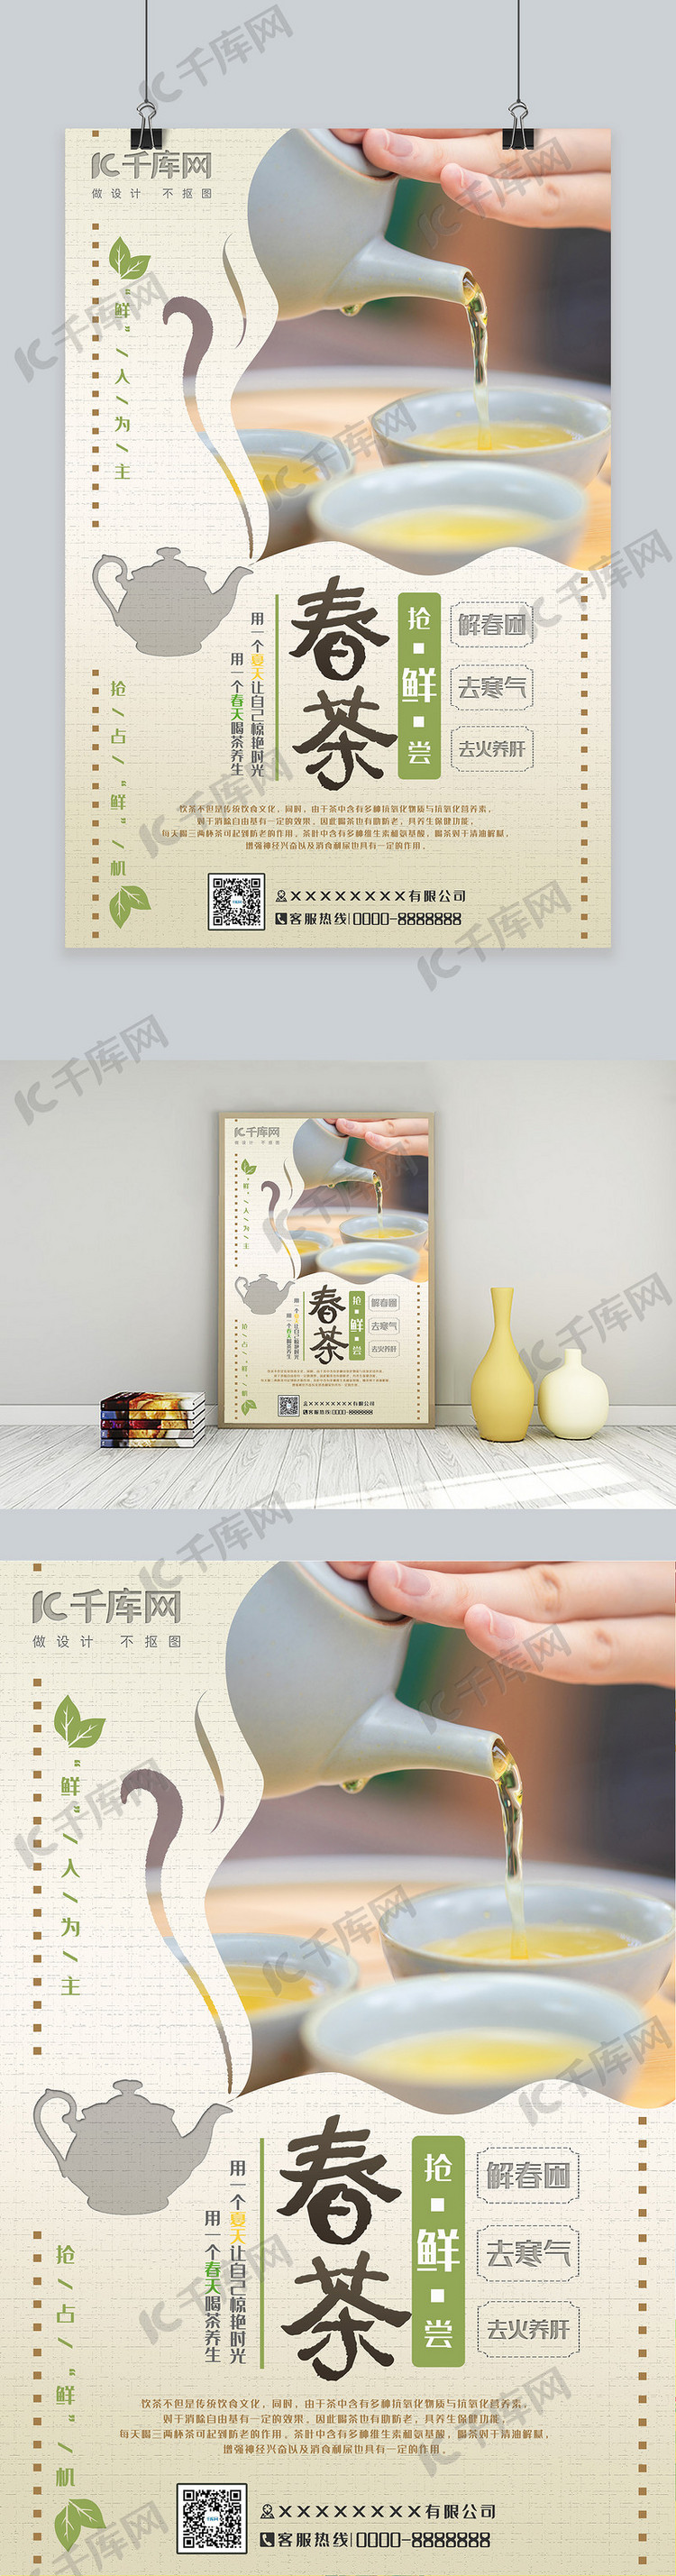 春茶抢鲜尝棕色简约风格春季春茶节宣传海报